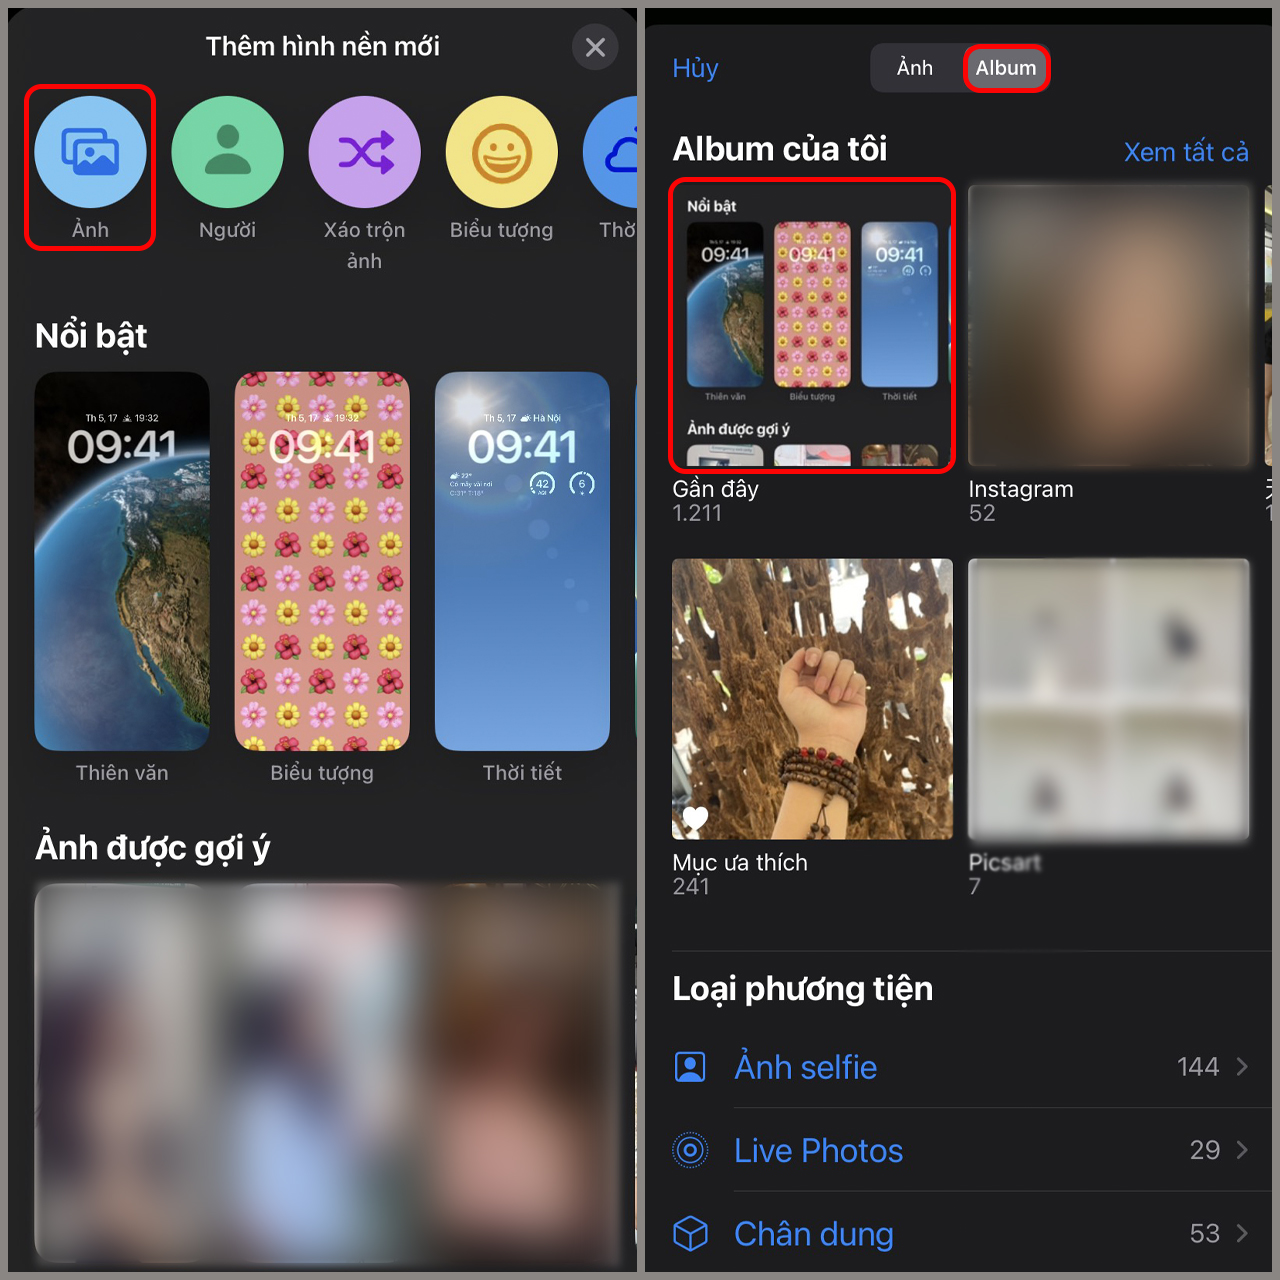 400 hình nền đẹp miễn phí dành cho iOS 10 bạn nên tải | Báo Dân trí